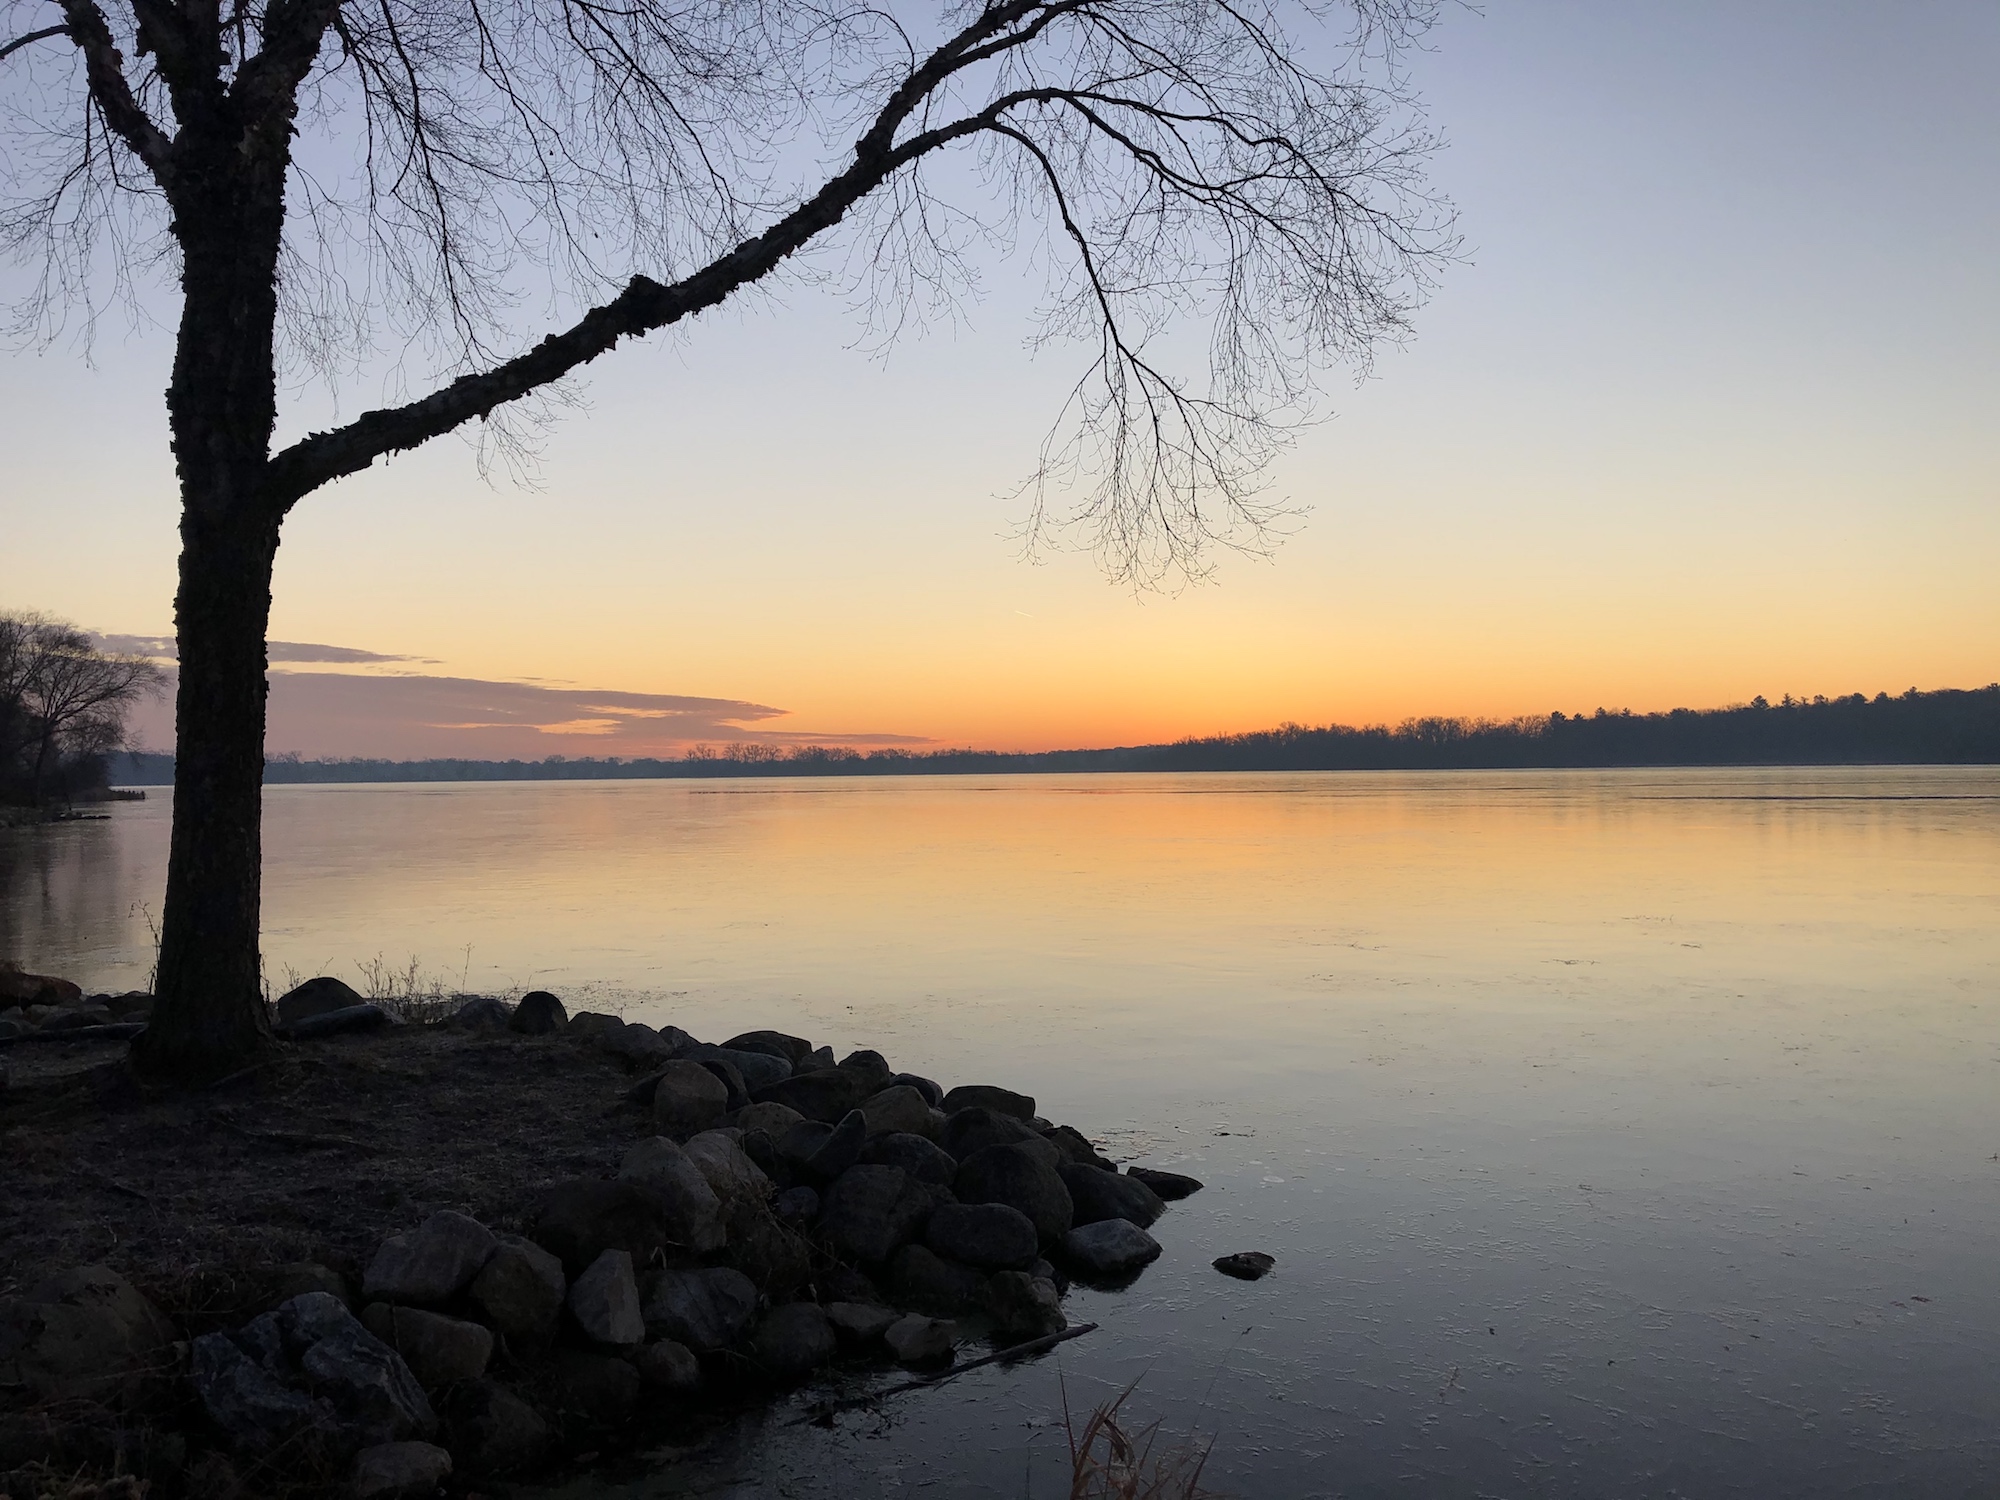 Lake Wingra on December 5, 2019.